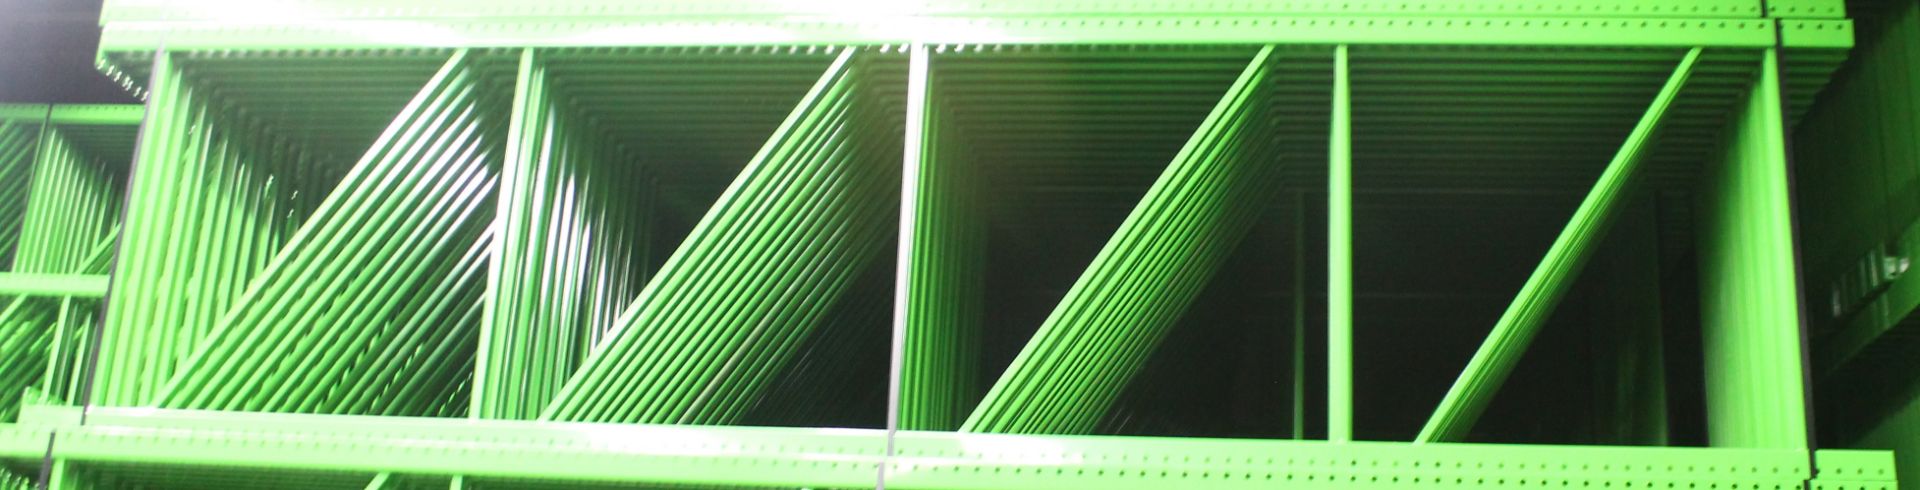 NEW 15 PCS OF TEARDROP UPRIGHT. SIZE 16'H X 48"D, 3"X 3" GREEN